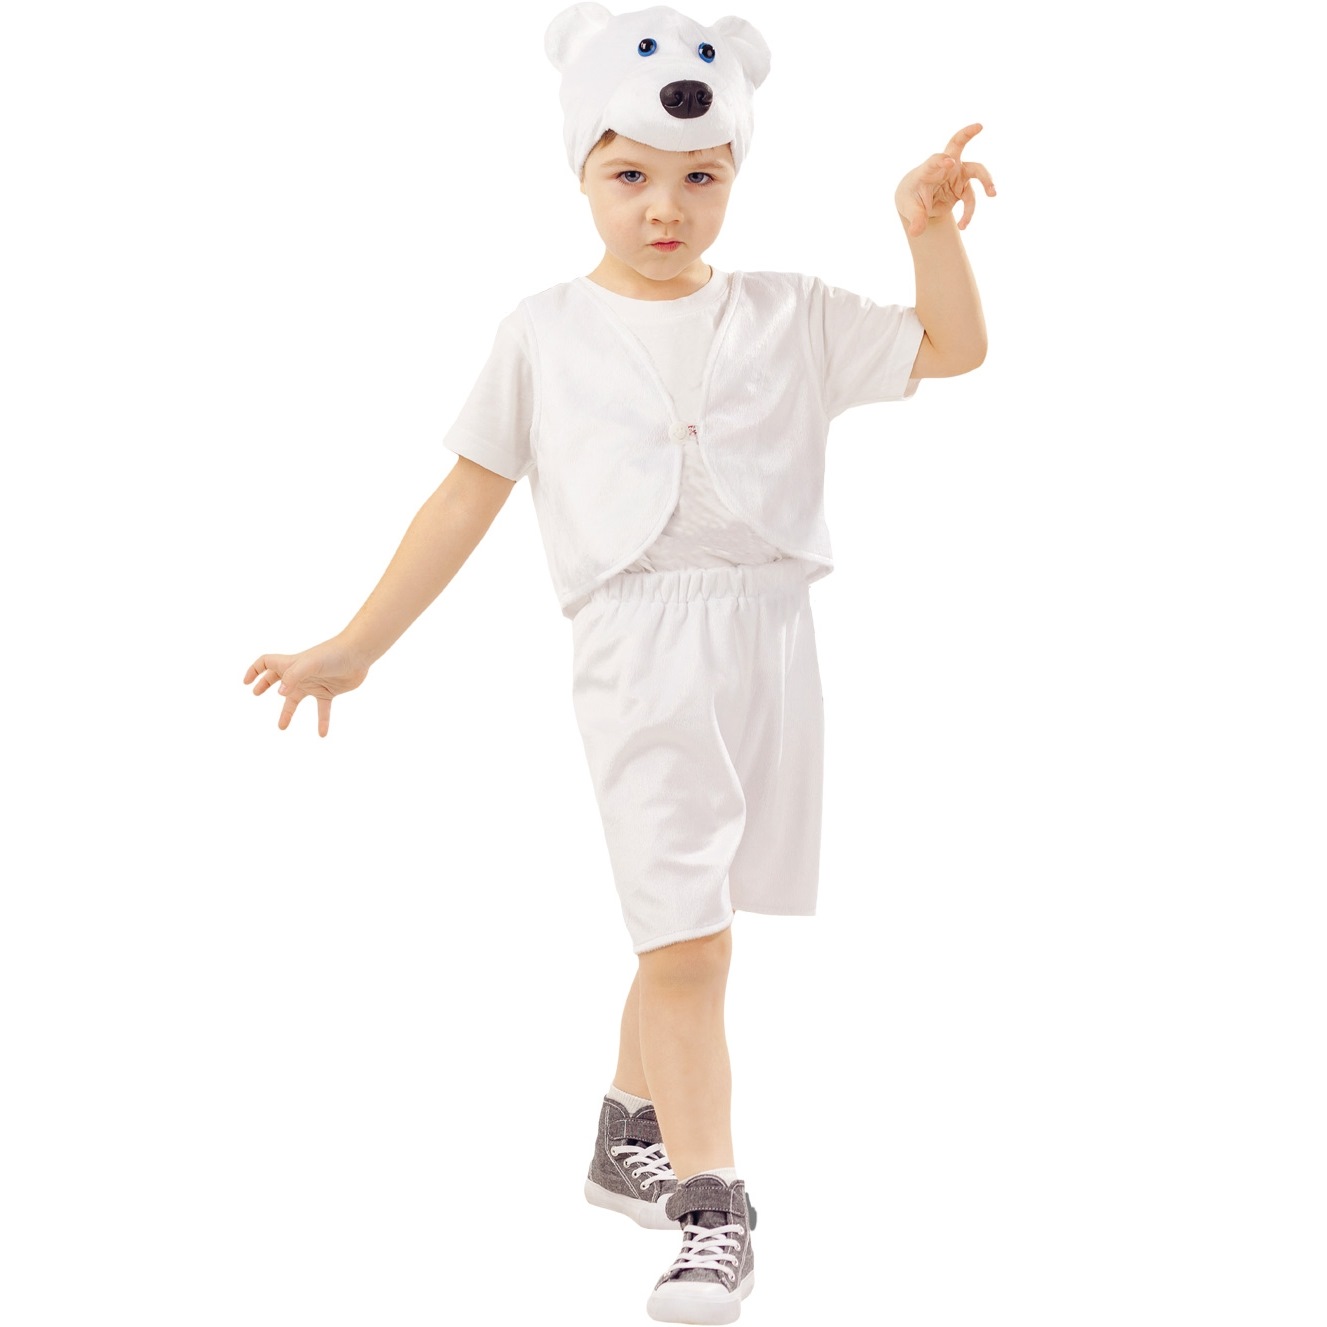 Карнавальный костюм "Медведь белый умка" (жилет,шорты,шапка) р. 98-52